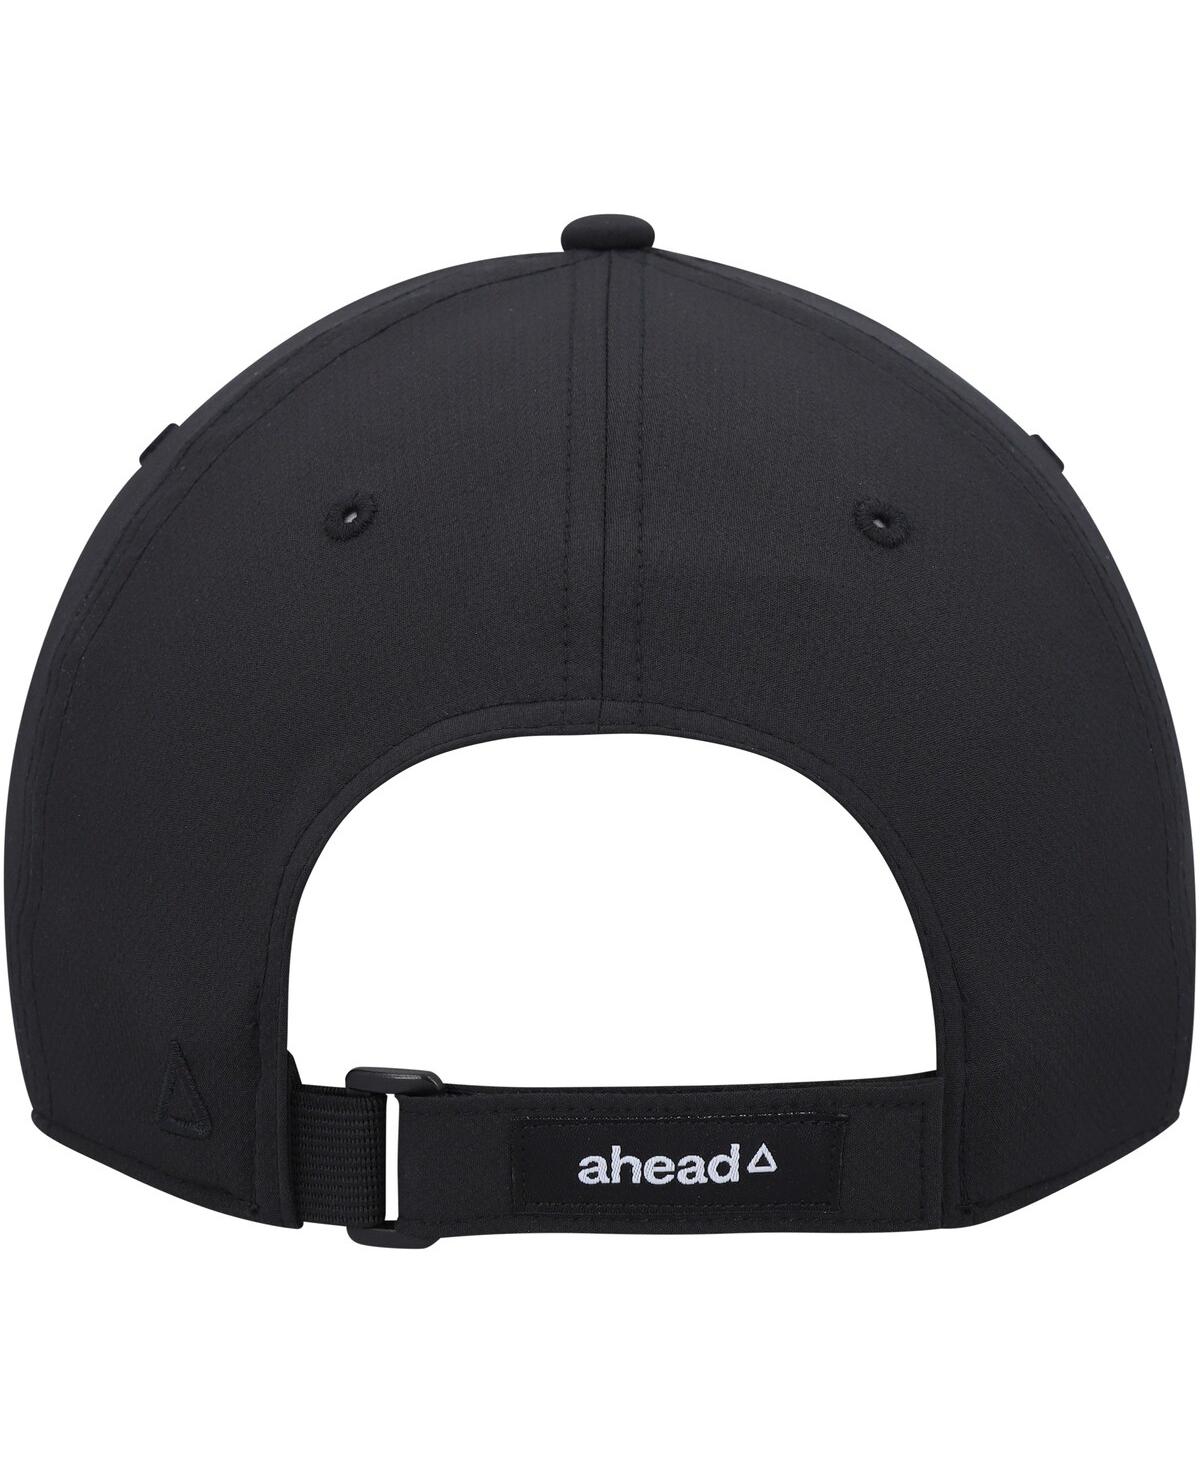 Shop Ahead Men's  Black Colorado Buffaloes Stratusâ Adjustable Hat